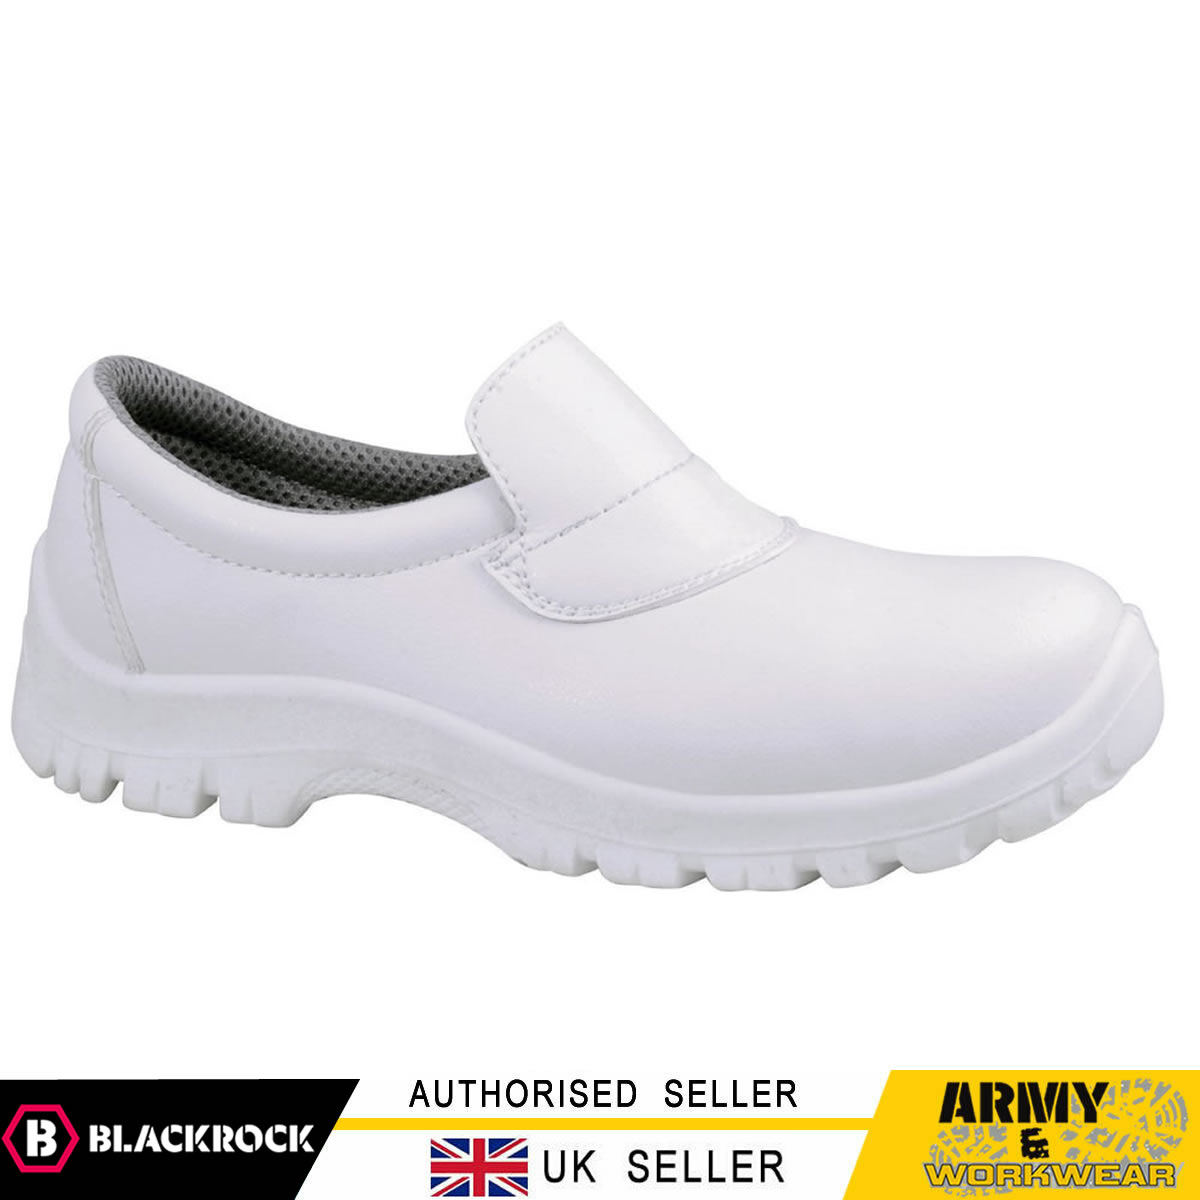 SRC04B Blackrock Hygiene Slip-On Safety Shoes Food Safe Work Steel Toe Caps 